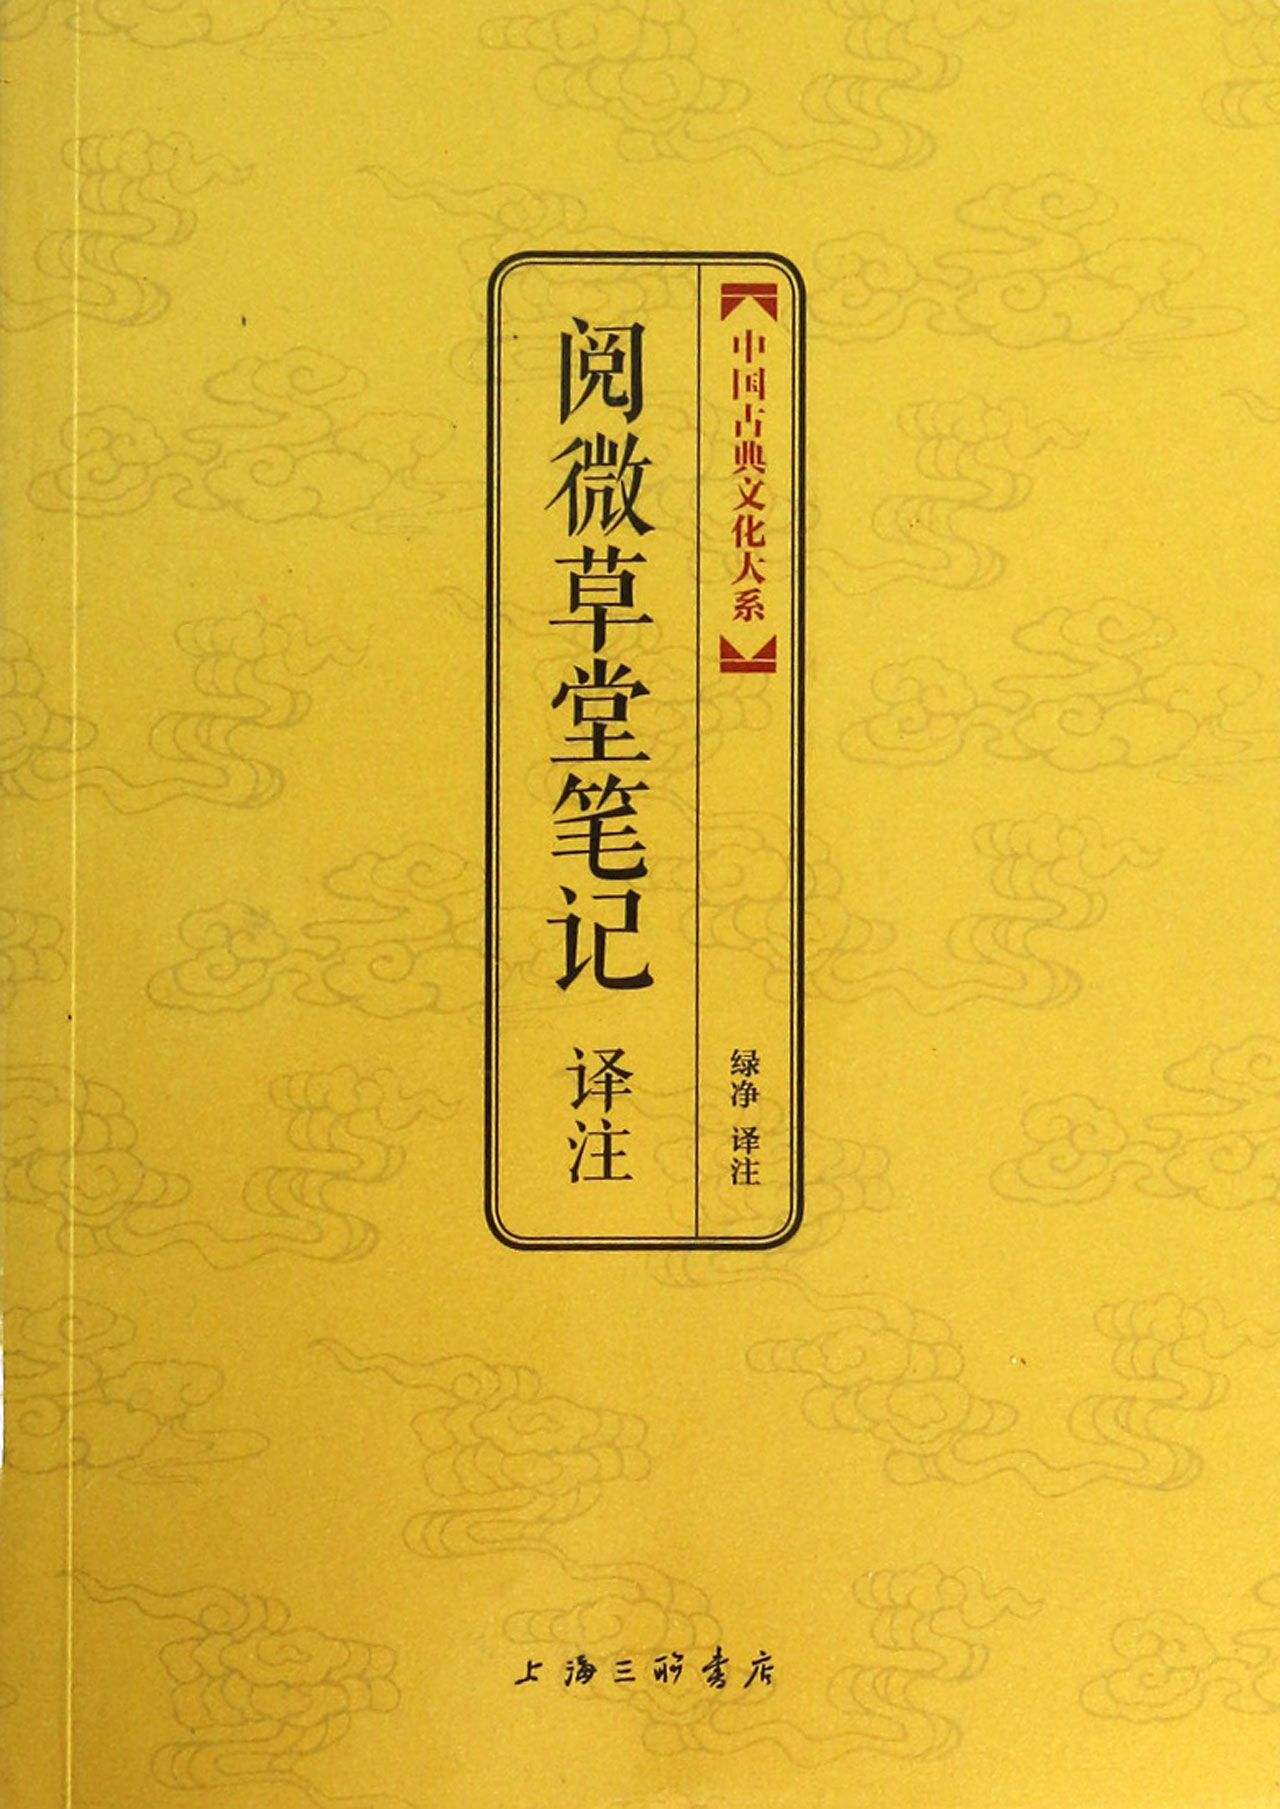 中國古典文化大系：閱微草堂筆記譯註